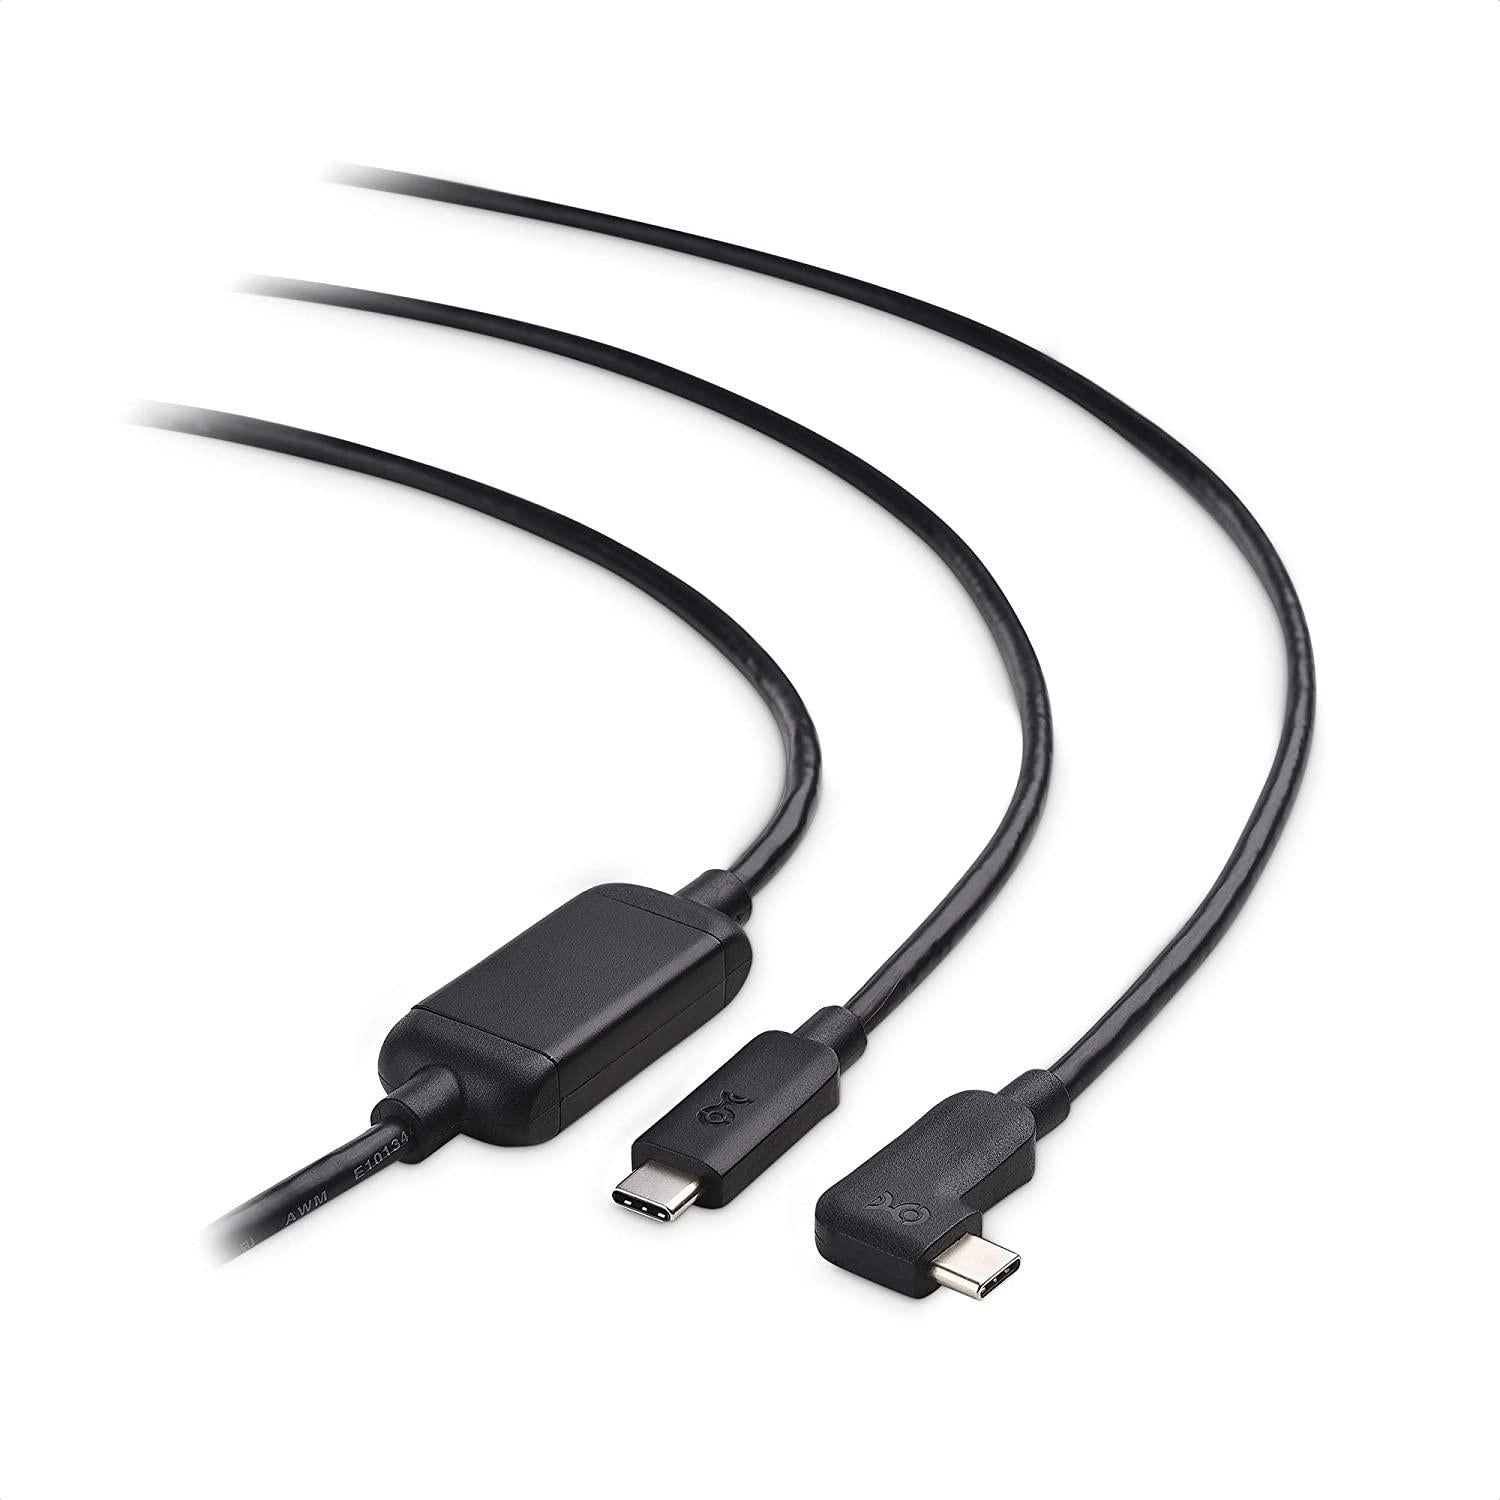 Cable Matters aktiv 7,5 m USB-C til USB-C VR Link-kabel for Oculus Quest 2 USB3.2 Gen1 5 Gbps 3A Super Speed VR Link-kabel